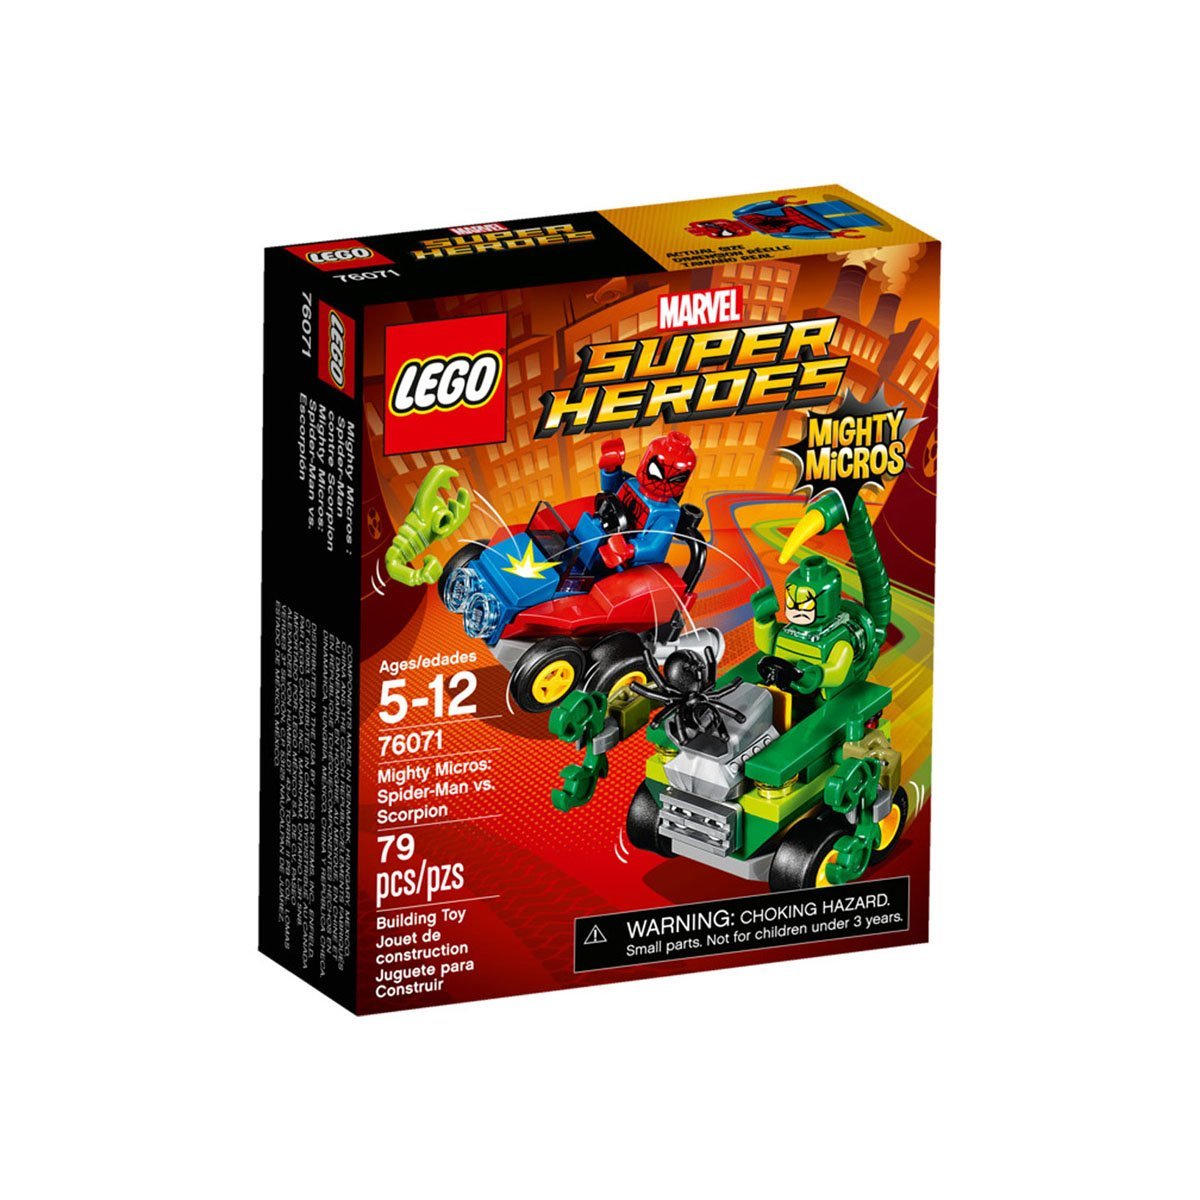 Mighty Micros Spider-Man Vs Escorpion Lego